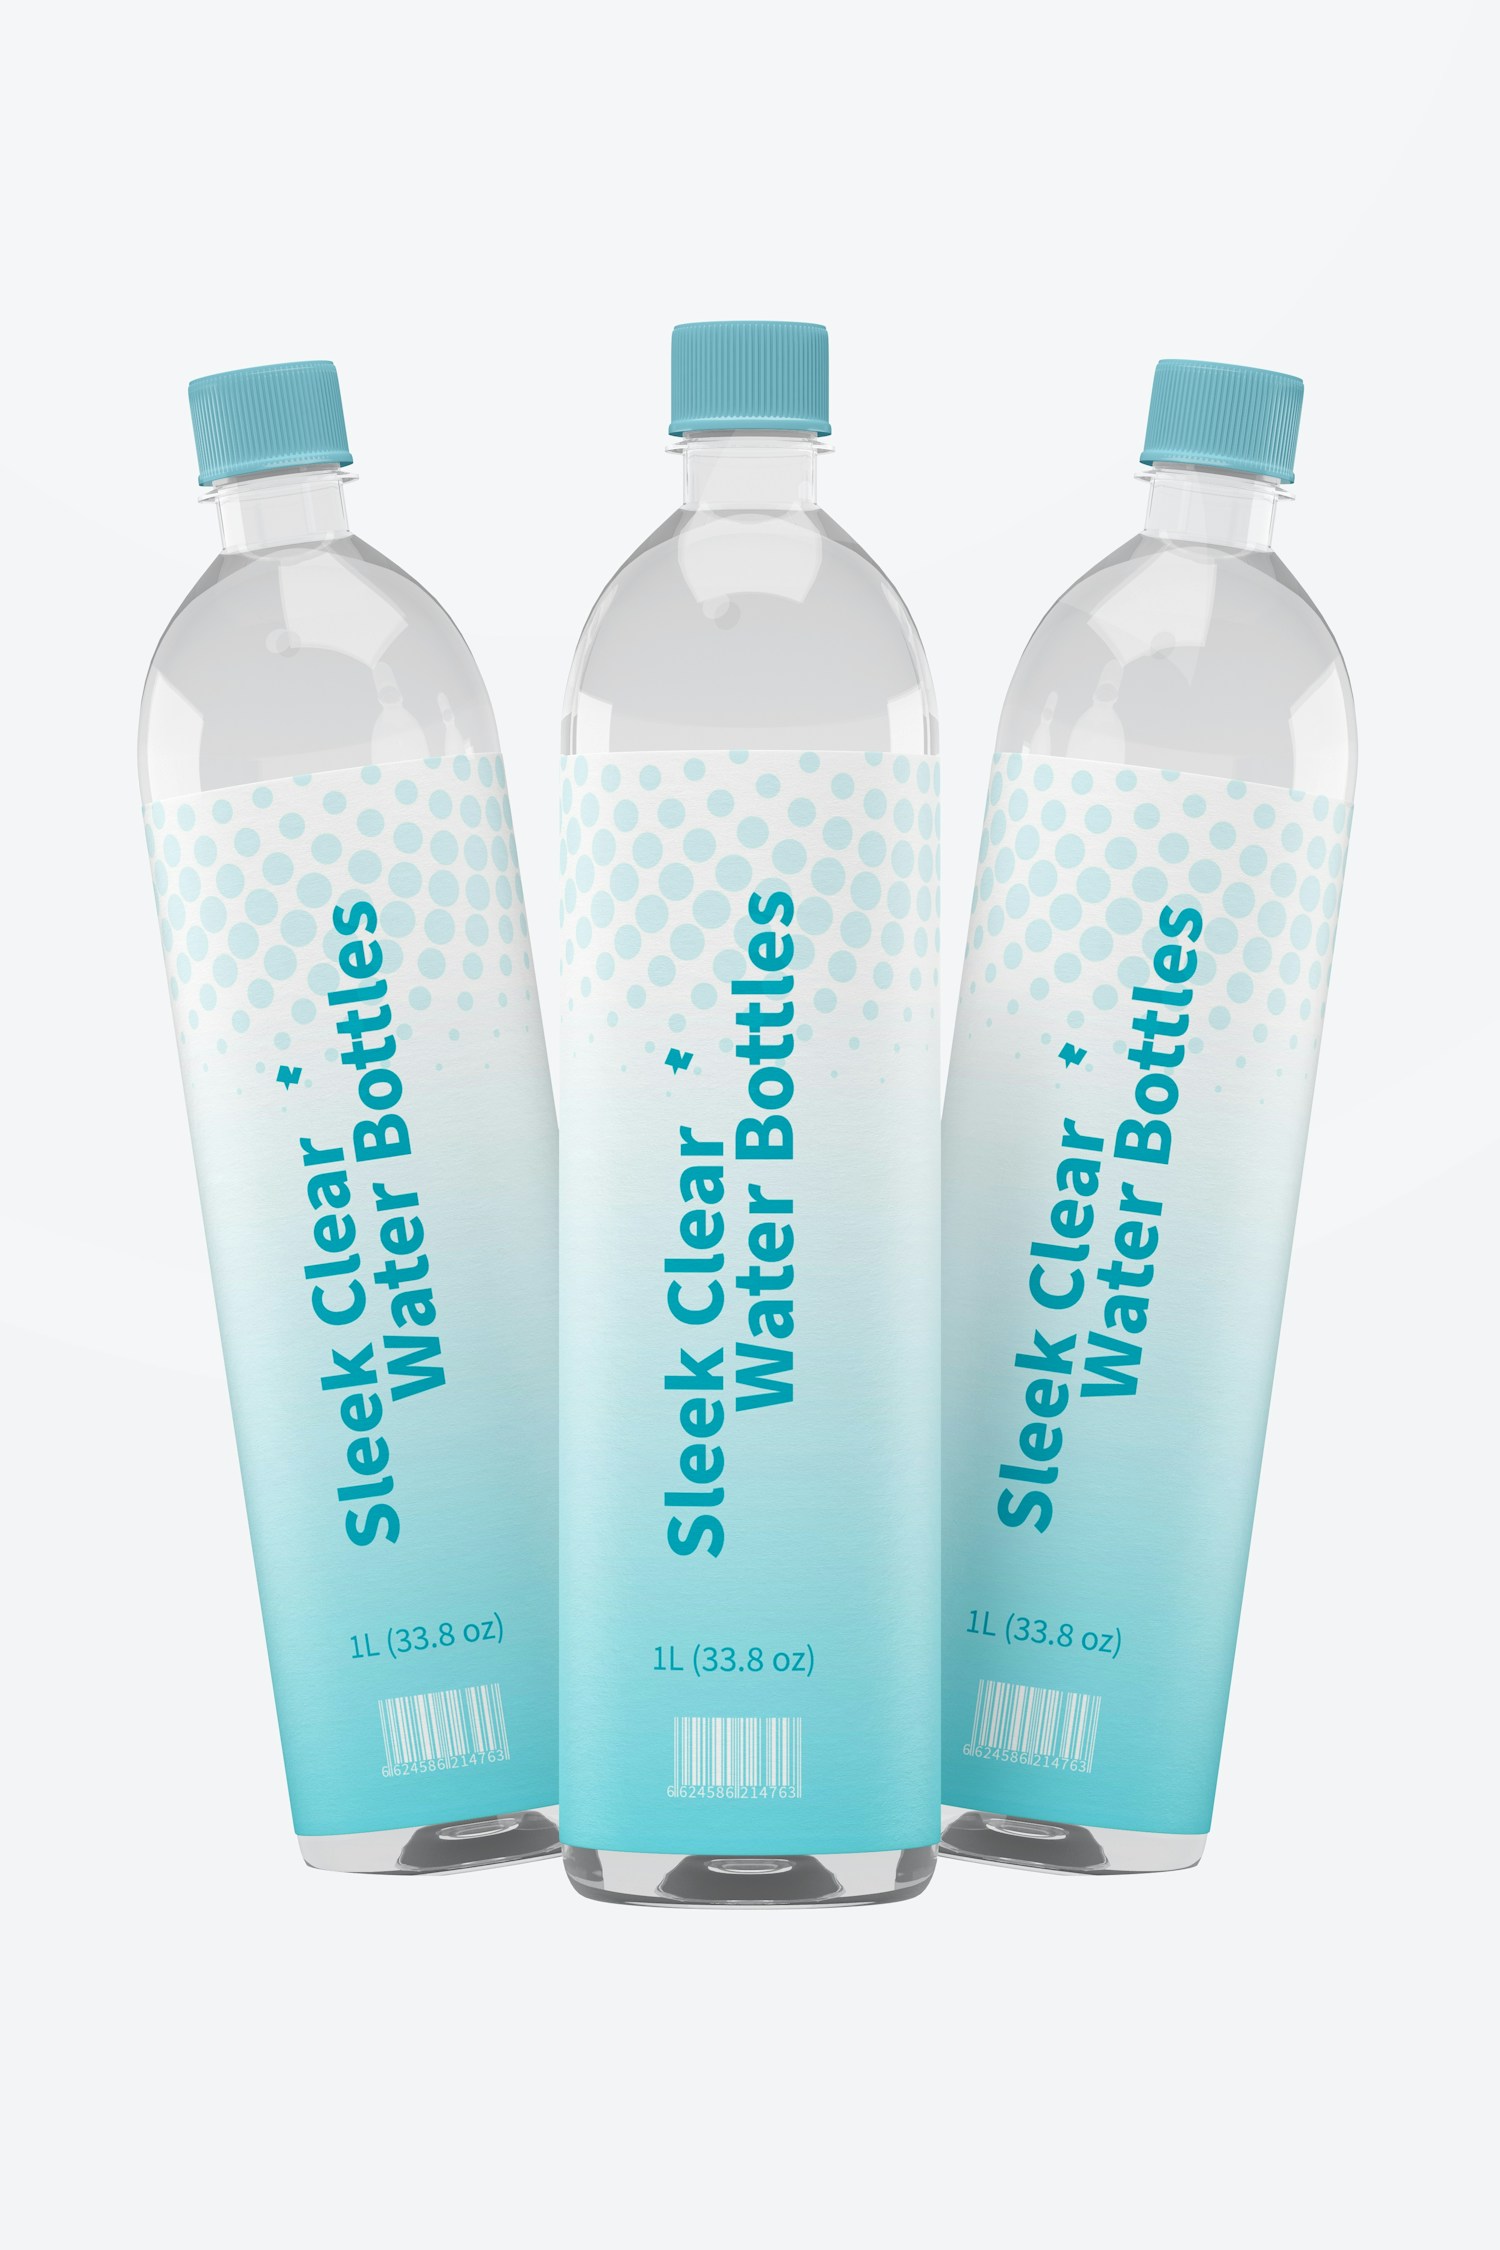 1L Sleek Clear Water Bottles Mockup